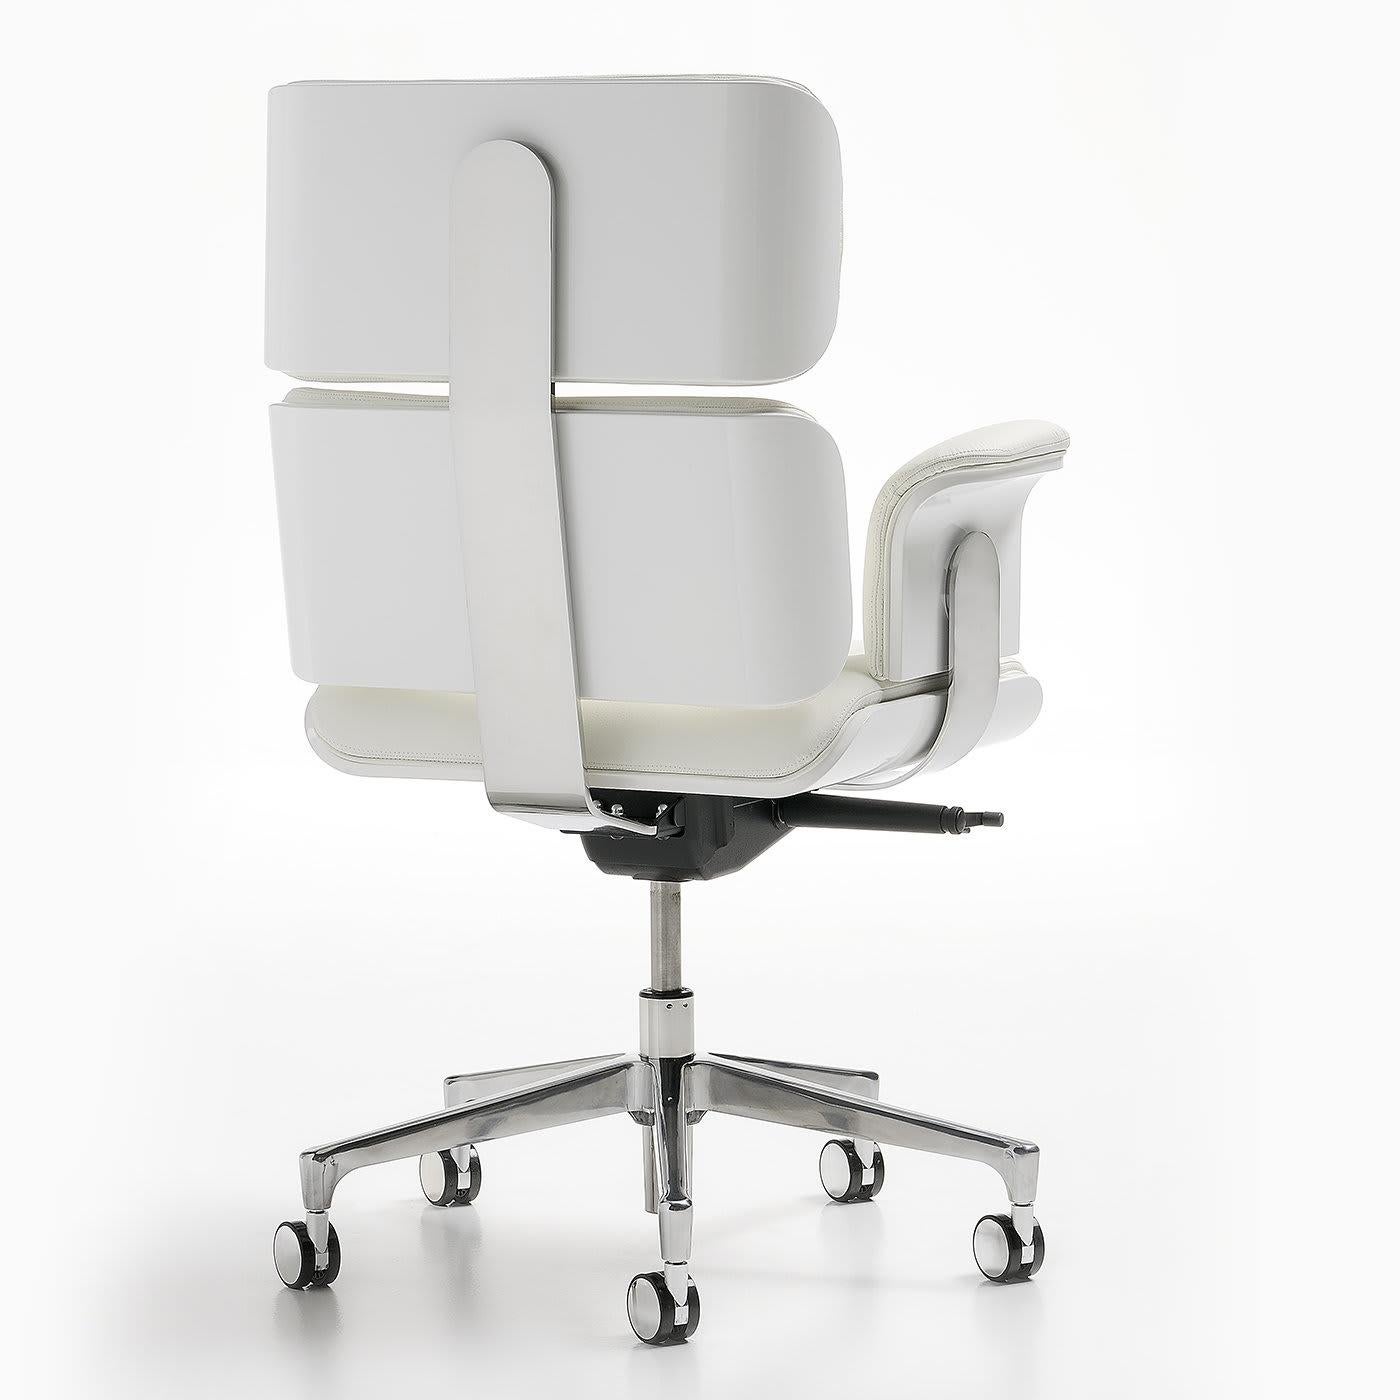 Dieser luxuriöse Sessel ist mit weißem, echtem Leder bezogen und mit Swarovski-Kristallknöpfen versehen. Die Sitzhöhe und die Neigung sind stufenlos einstellbar, und der Stuhl kann in fünf verschiedenen Neigungspositionen arretiert werden. Er